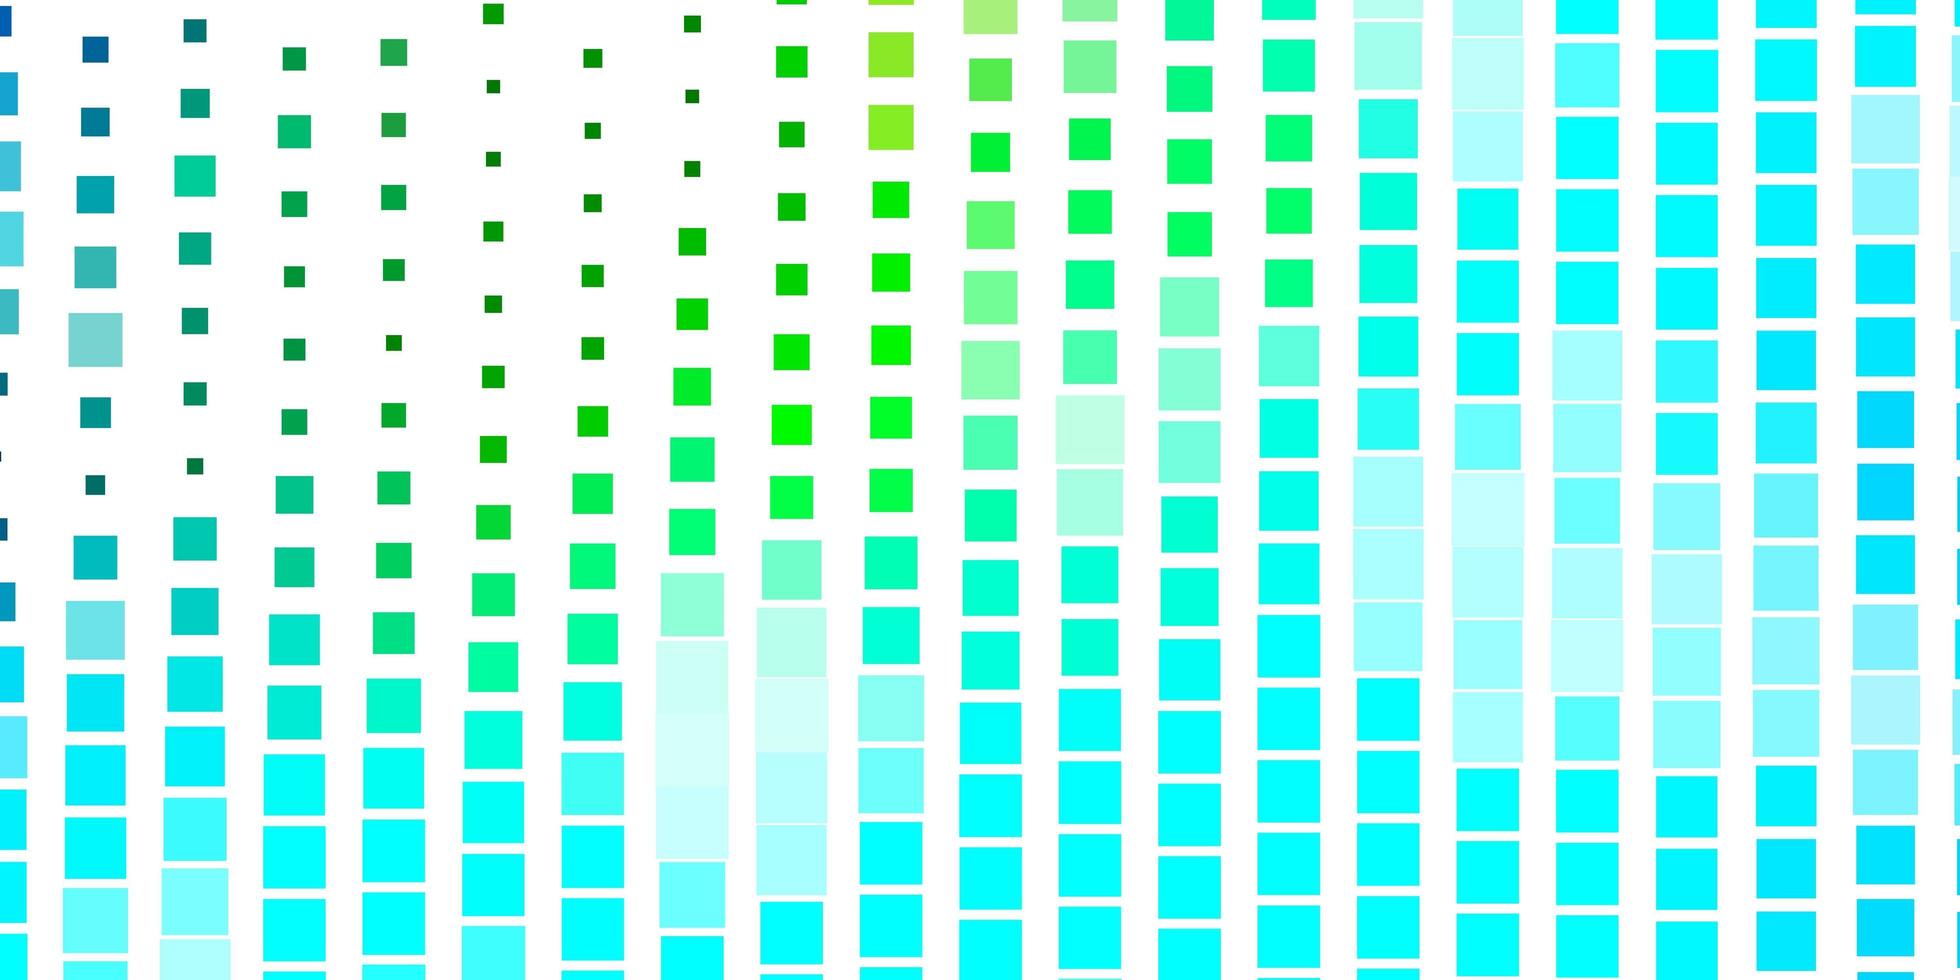 ljusblå, grön vektorbakgrund med rektanglar. färgglad illustration med lutningsrektanglar och rutor. mönster för webbplatser, målsidor. vektor